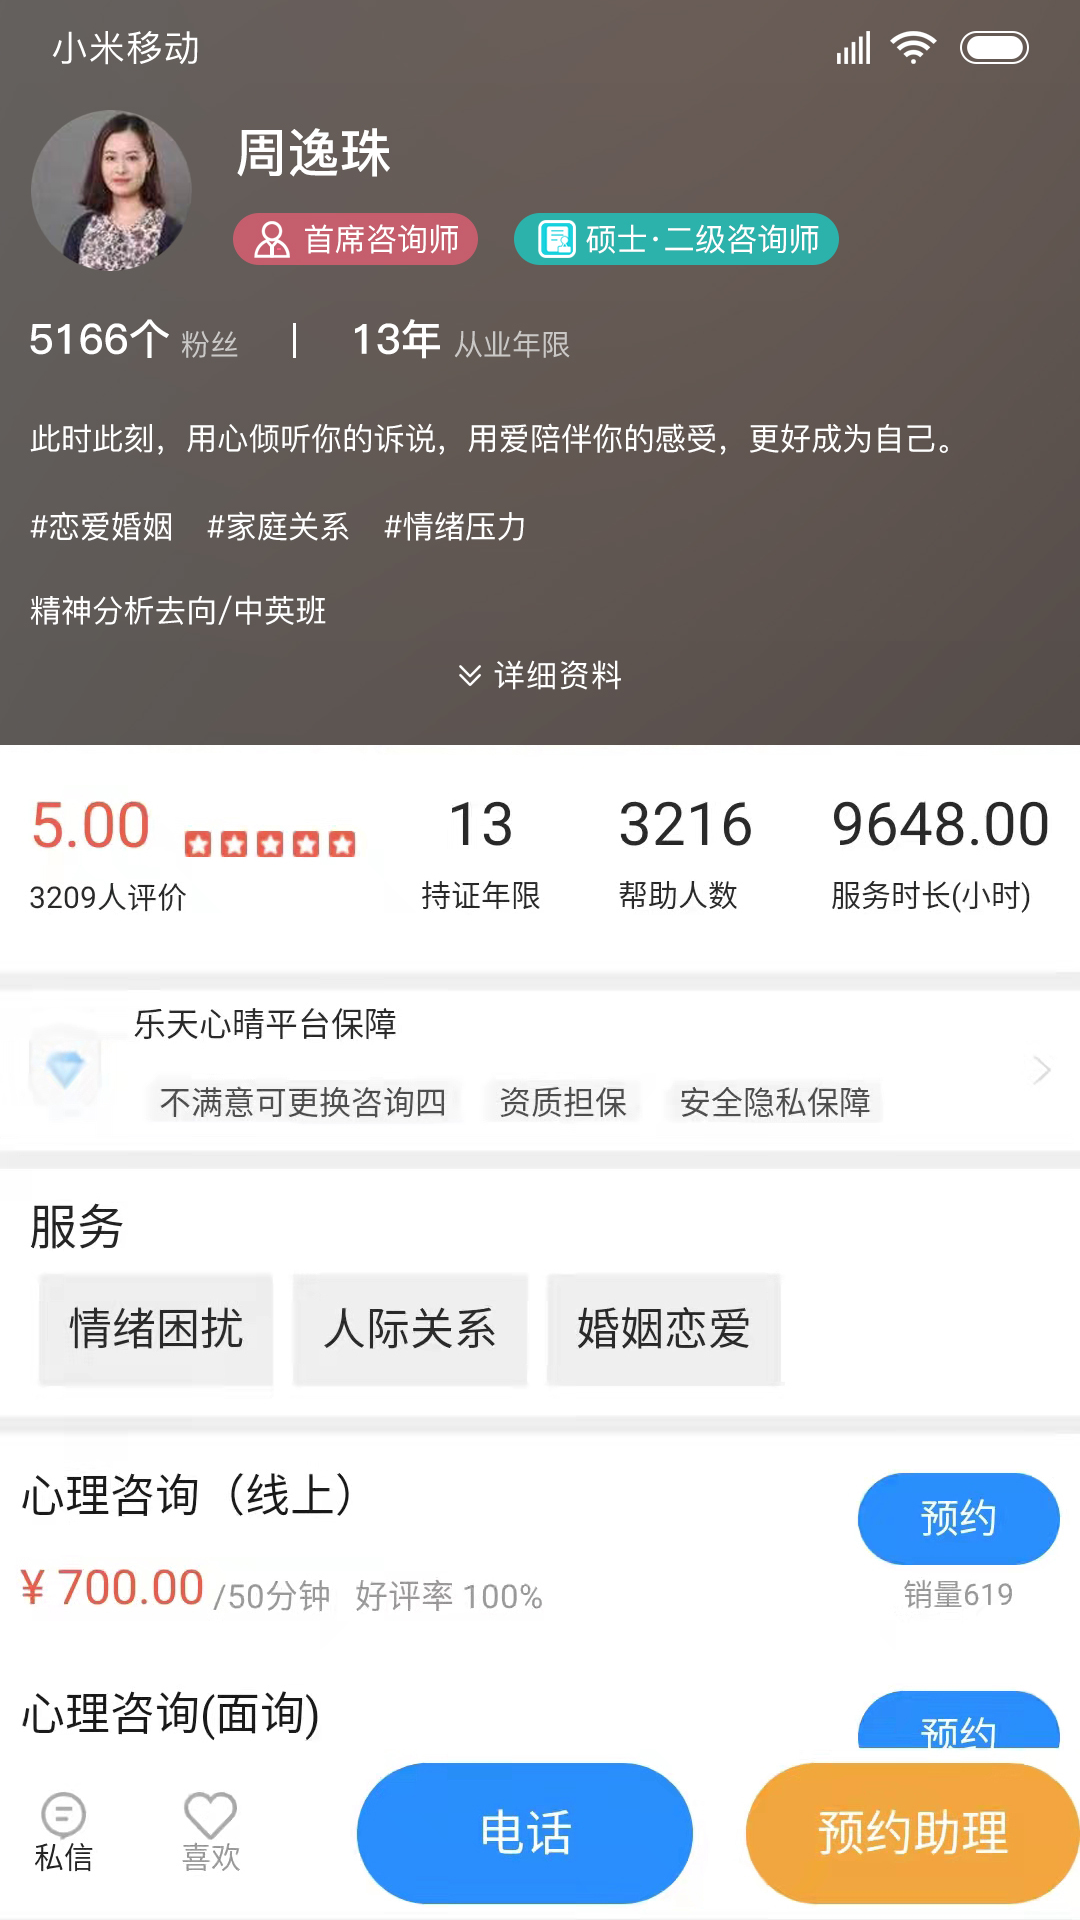 乐天心晴心理咨询-乐天心晴app下载v2.8.9 安卓版